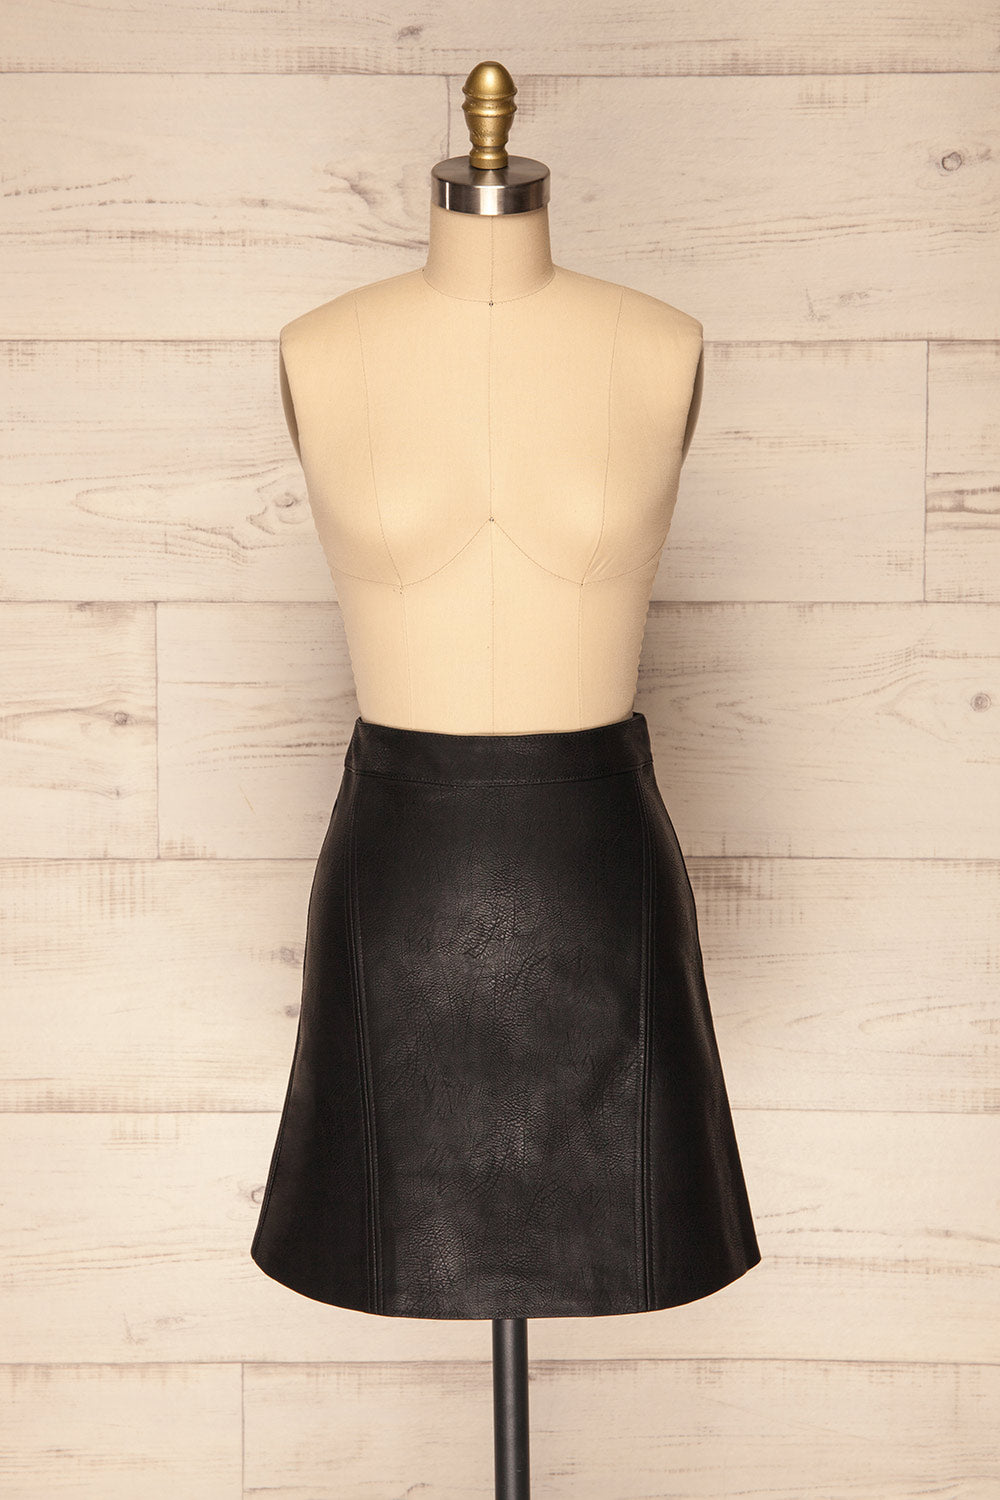 Dicmo Black Faux Leather Short A-Line Skirt | La Petite Garçonne